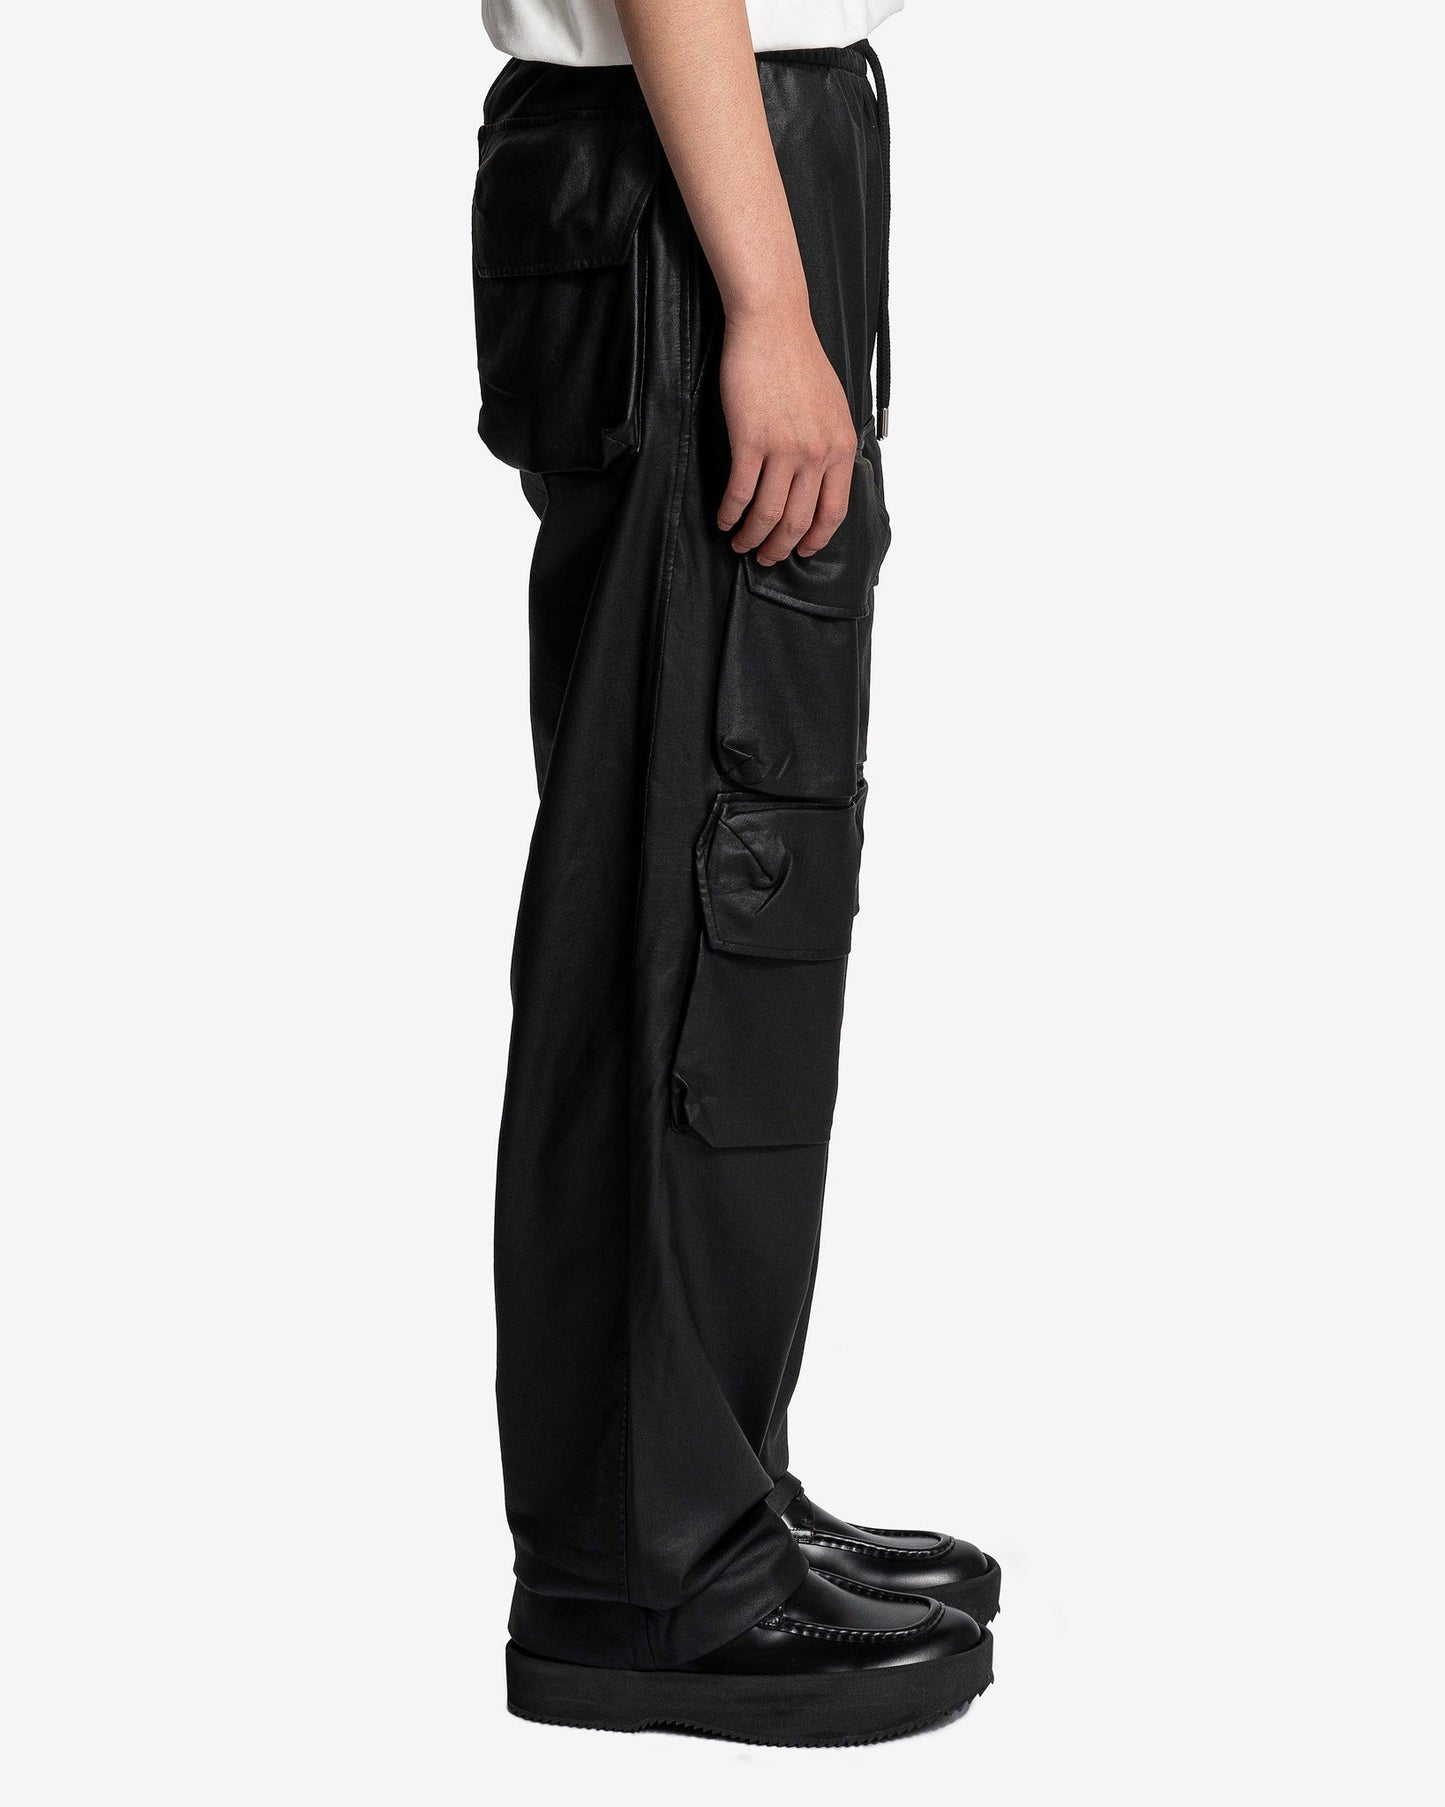 Dries Van Noten Men's Pants Hesby Pants in Black